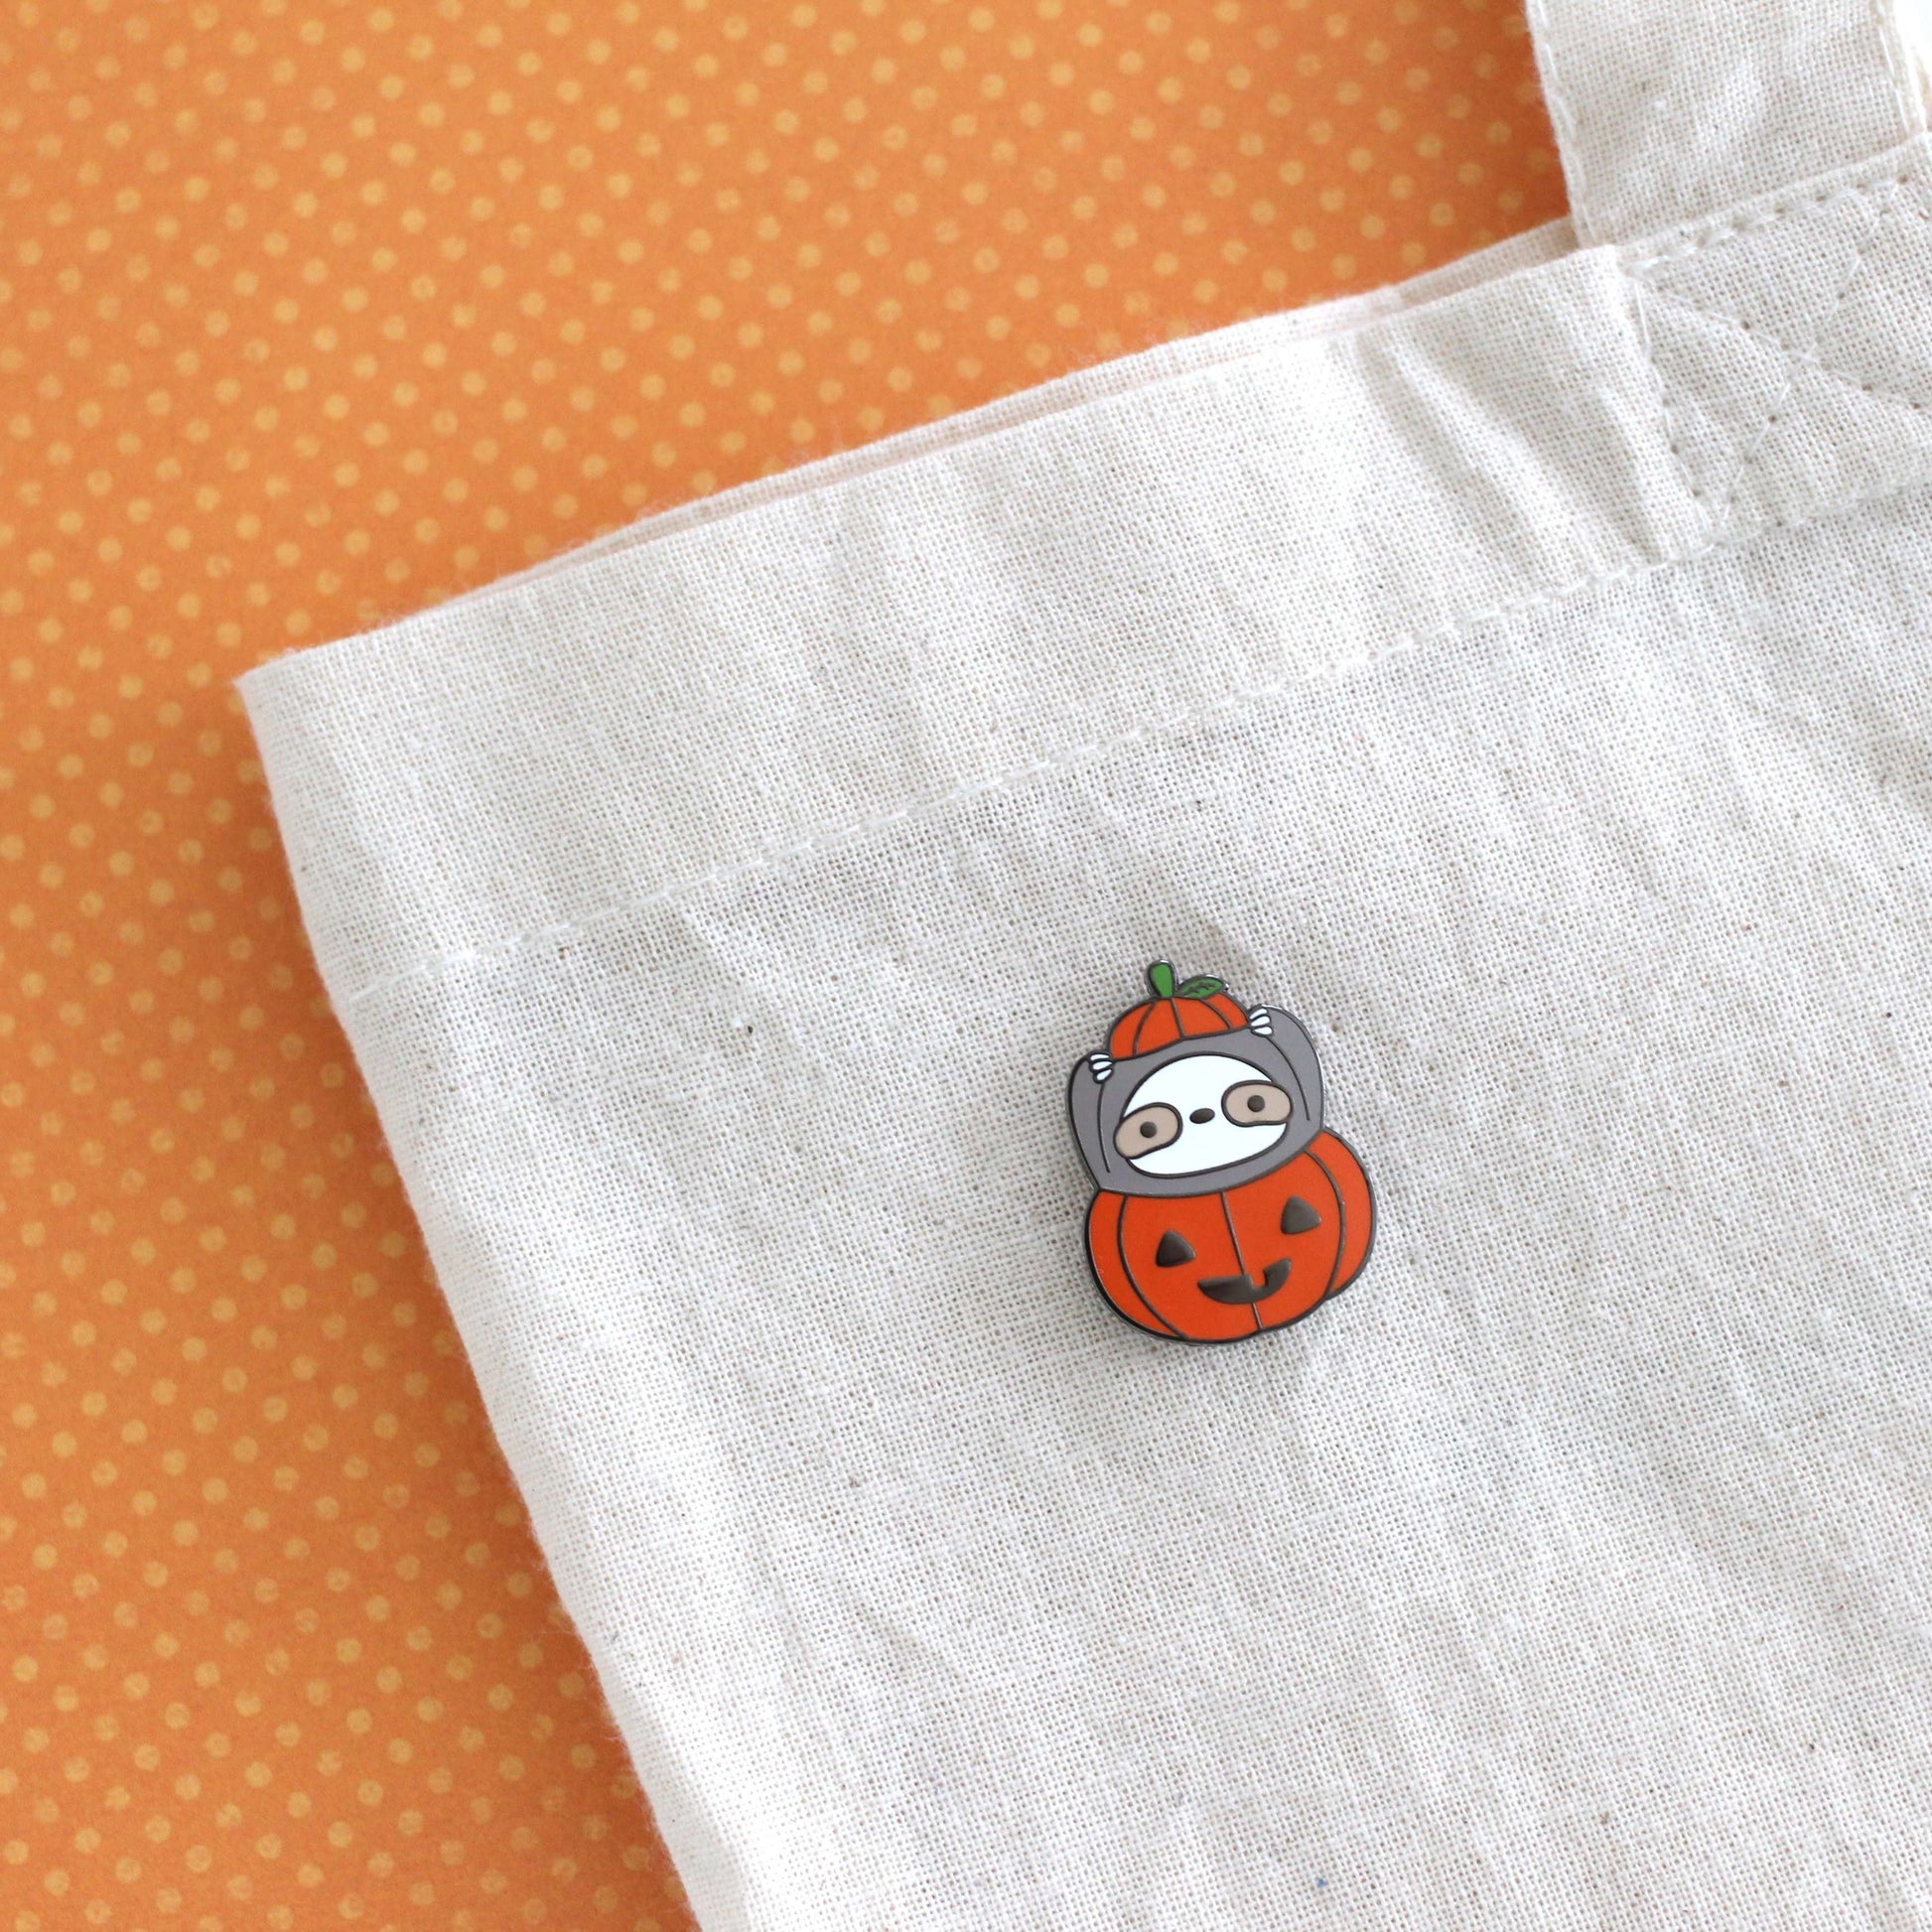 Pin on Halloween